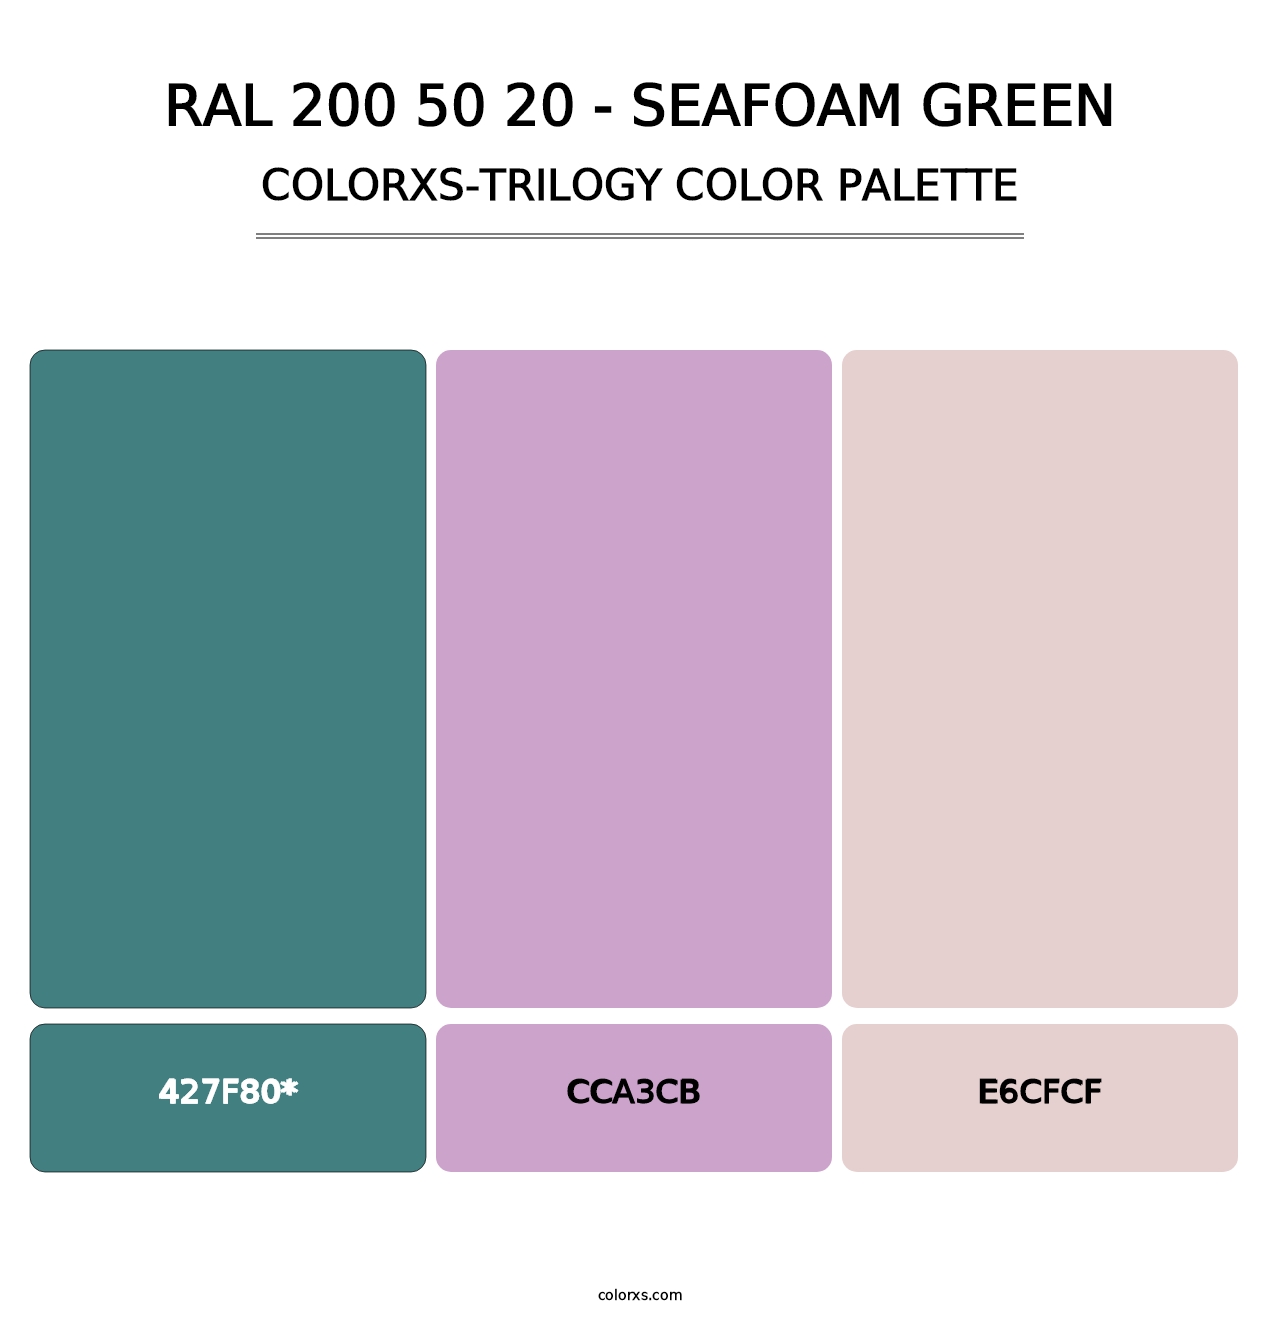 RAL 200 50 20 - Seafoam Green - Colorxs Trilogy Palette